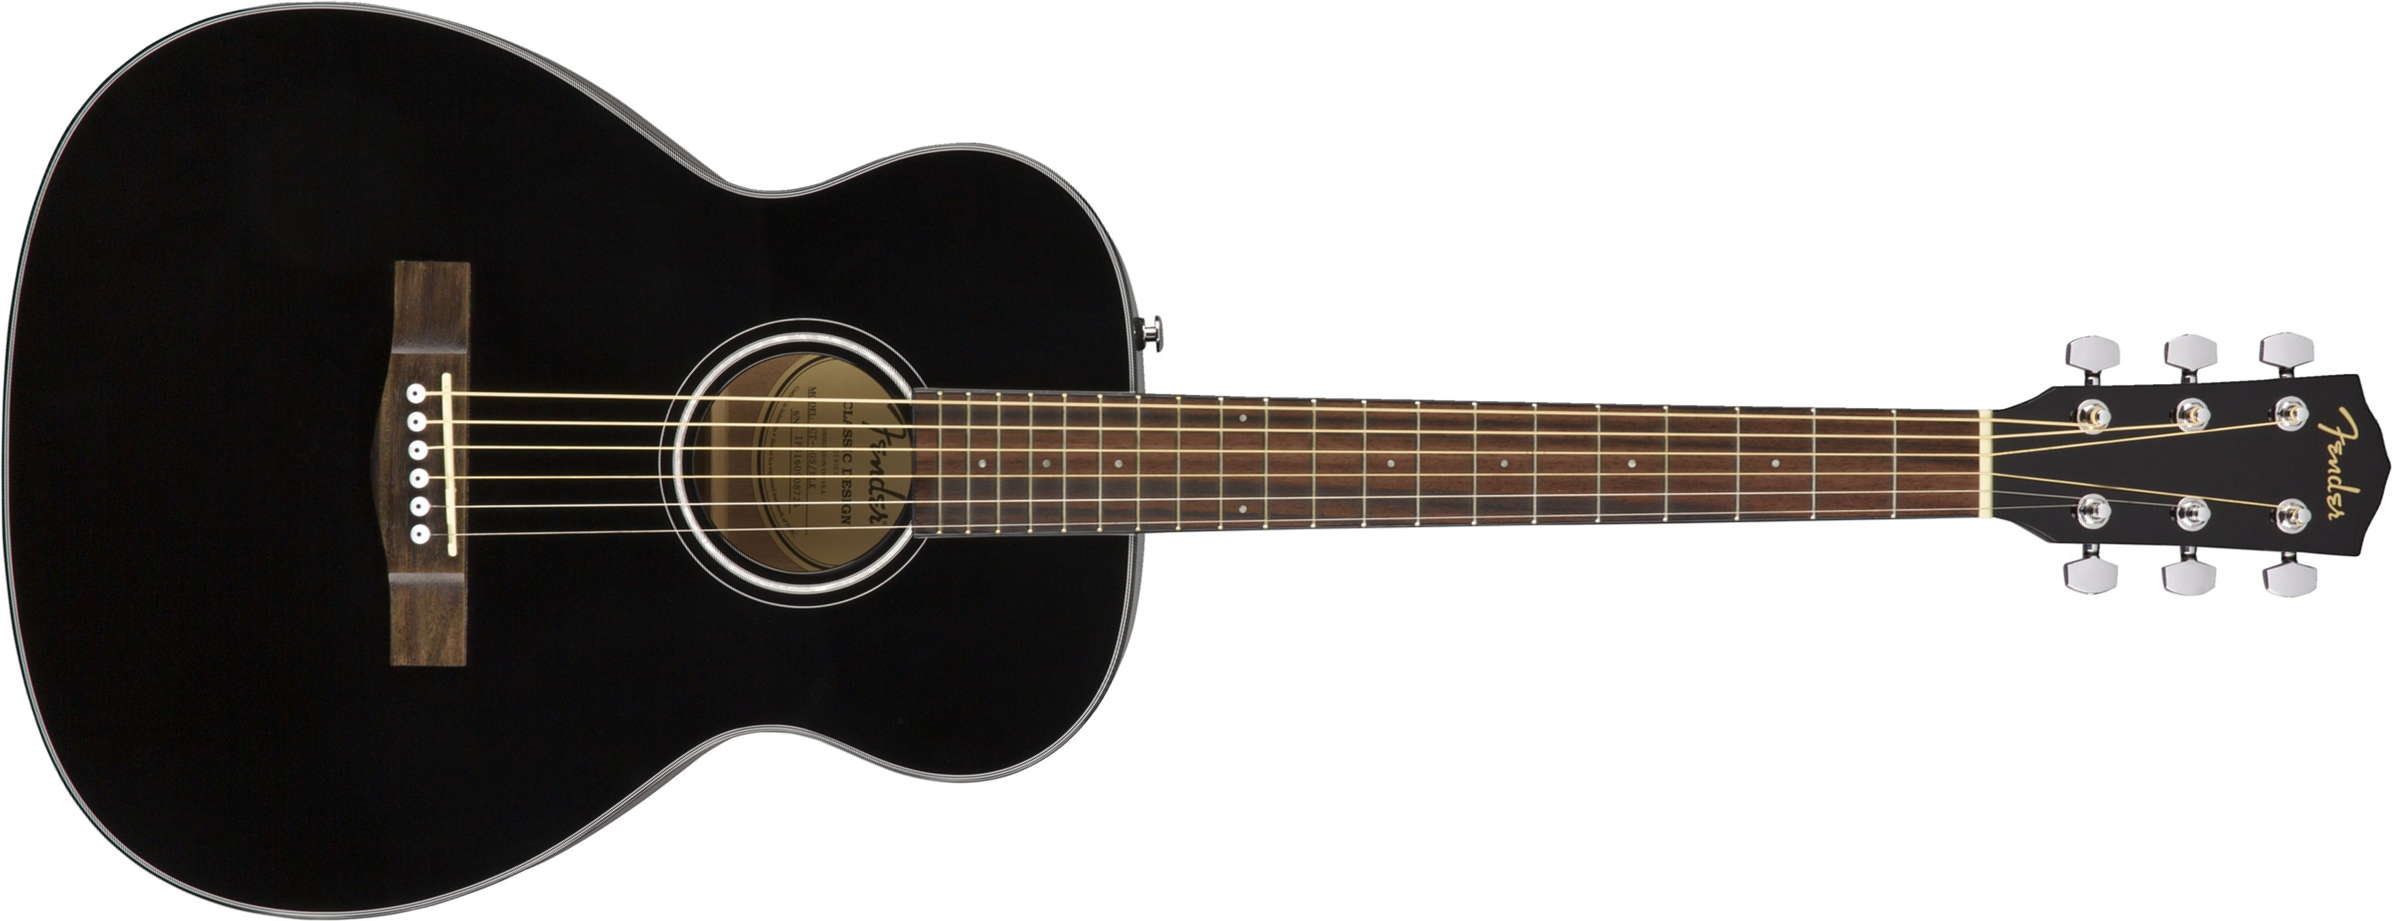 Fender Ct-60s Classic Design Travel Epicea Acajou - Black - Travel acoustic guitar - Main picture